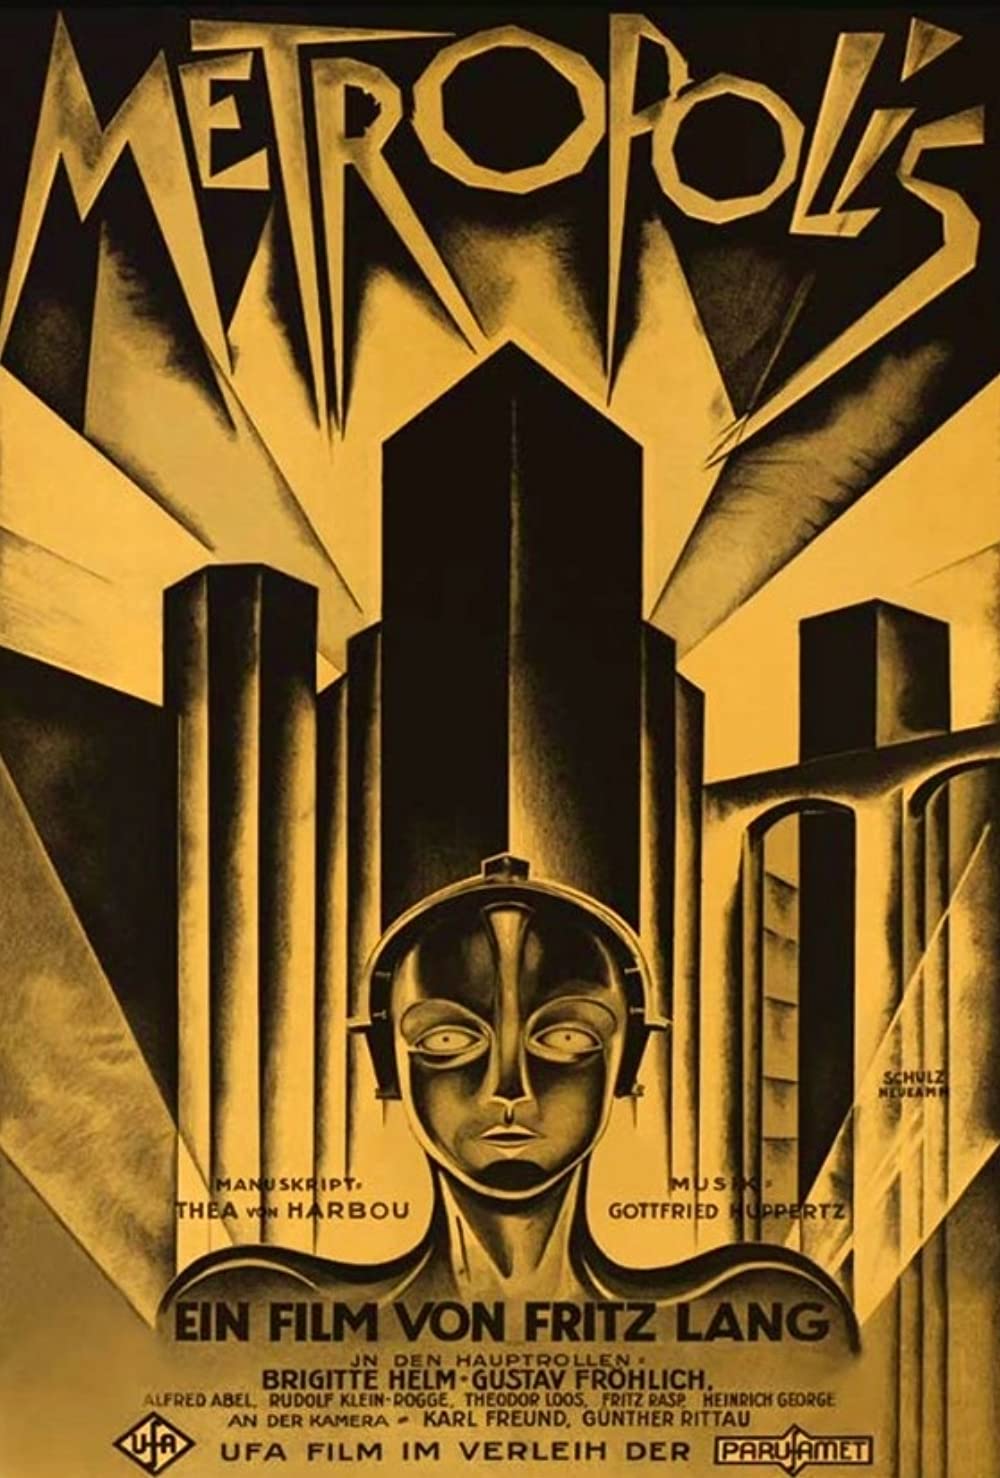 Η αφίσα της ταινίας Metropolis του Φριτς Λανγκ 